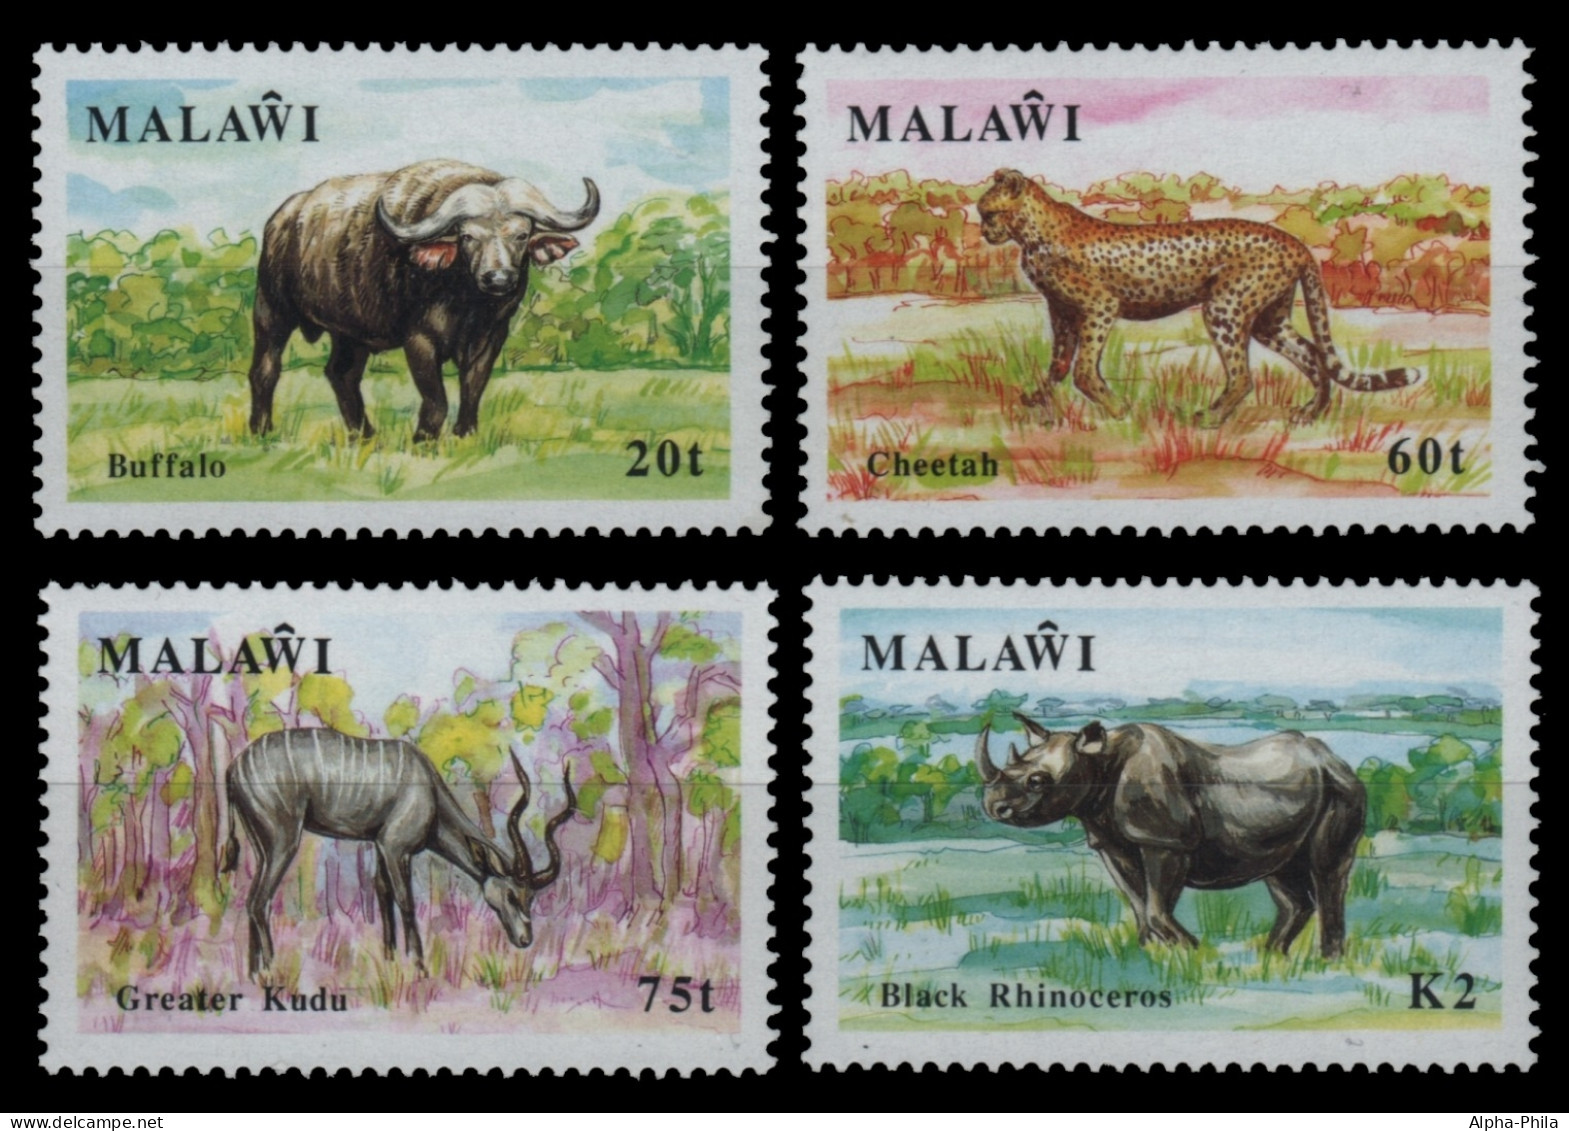 Malawi 1991 - Mi-Nr. 565-568 ** - MNH - Wildtiere / Wild Animals - Malawi (1964-...)